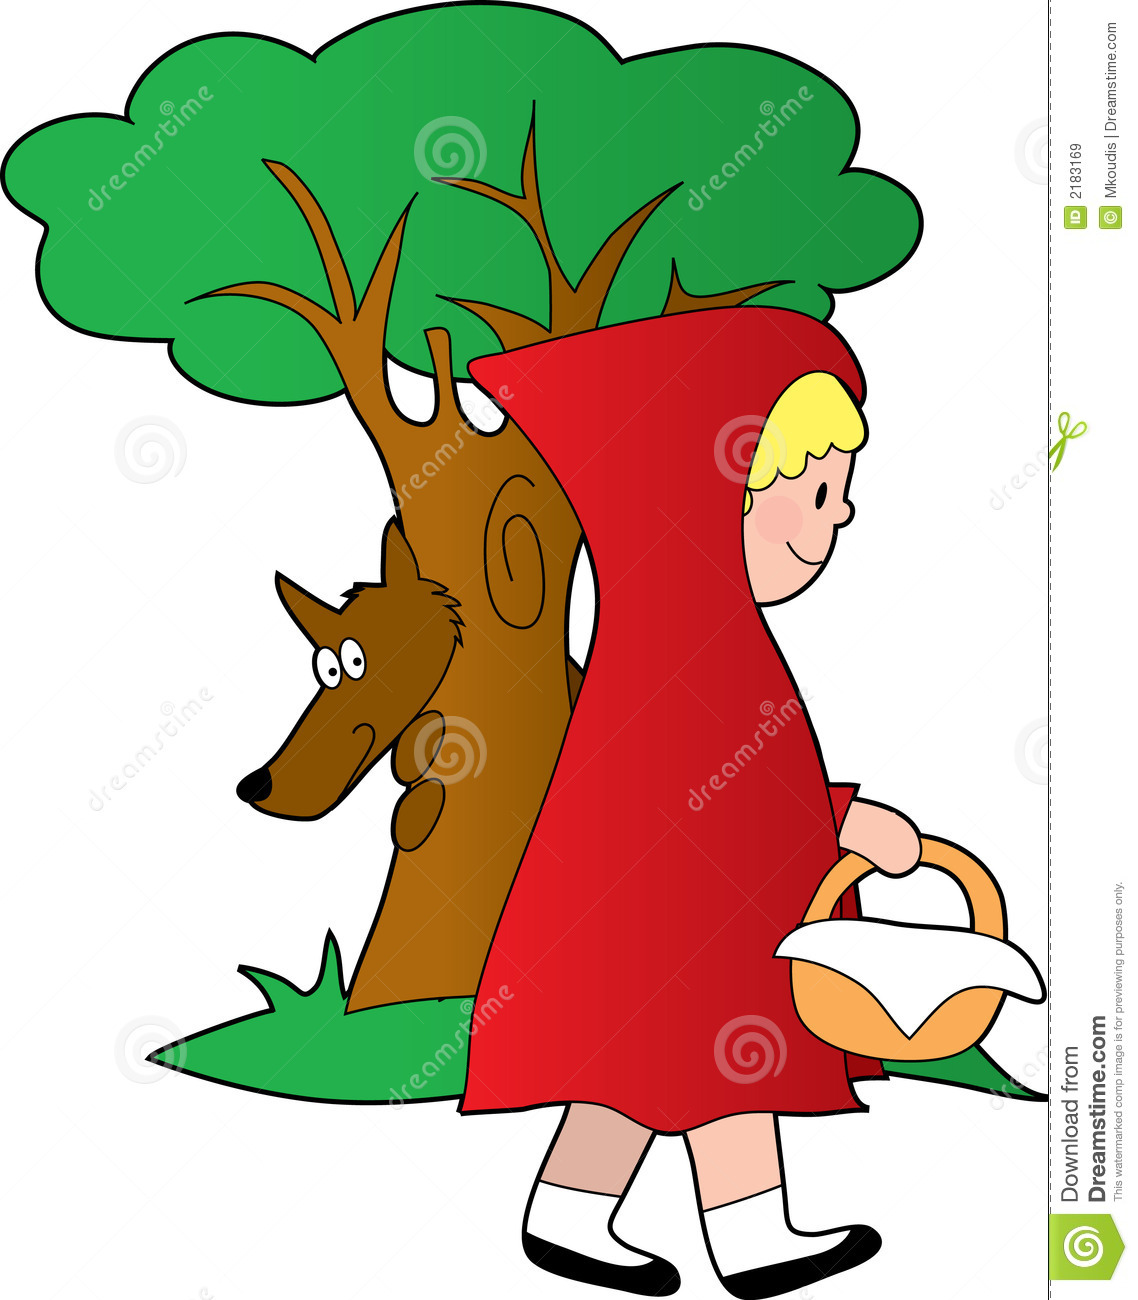 Little Red Riding Hood meetin